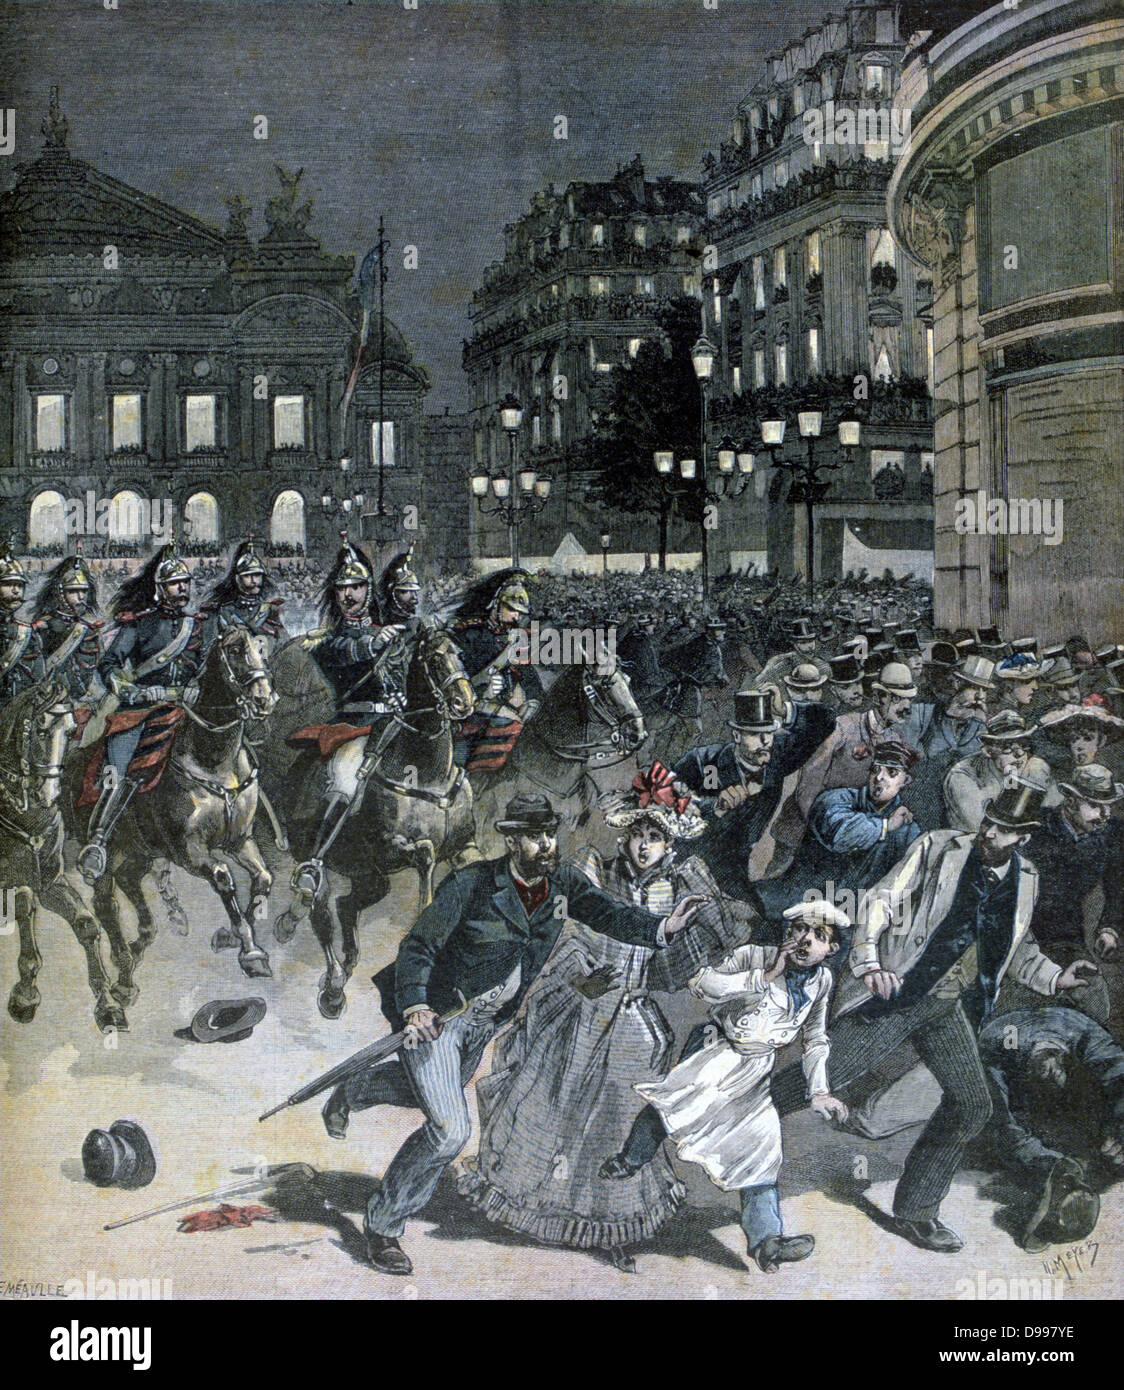 Produzione di Wagner's opera "Lohengrin" : Riot protestando contro la produzione all'Opera di Parigi. Anti-German sensazione era ancora forte in Francia dopo la guerra franco-prussiana 1870-1871. Da "Le Petit Journal ', Parigi, 3 ottobre 1891. Foto Stock